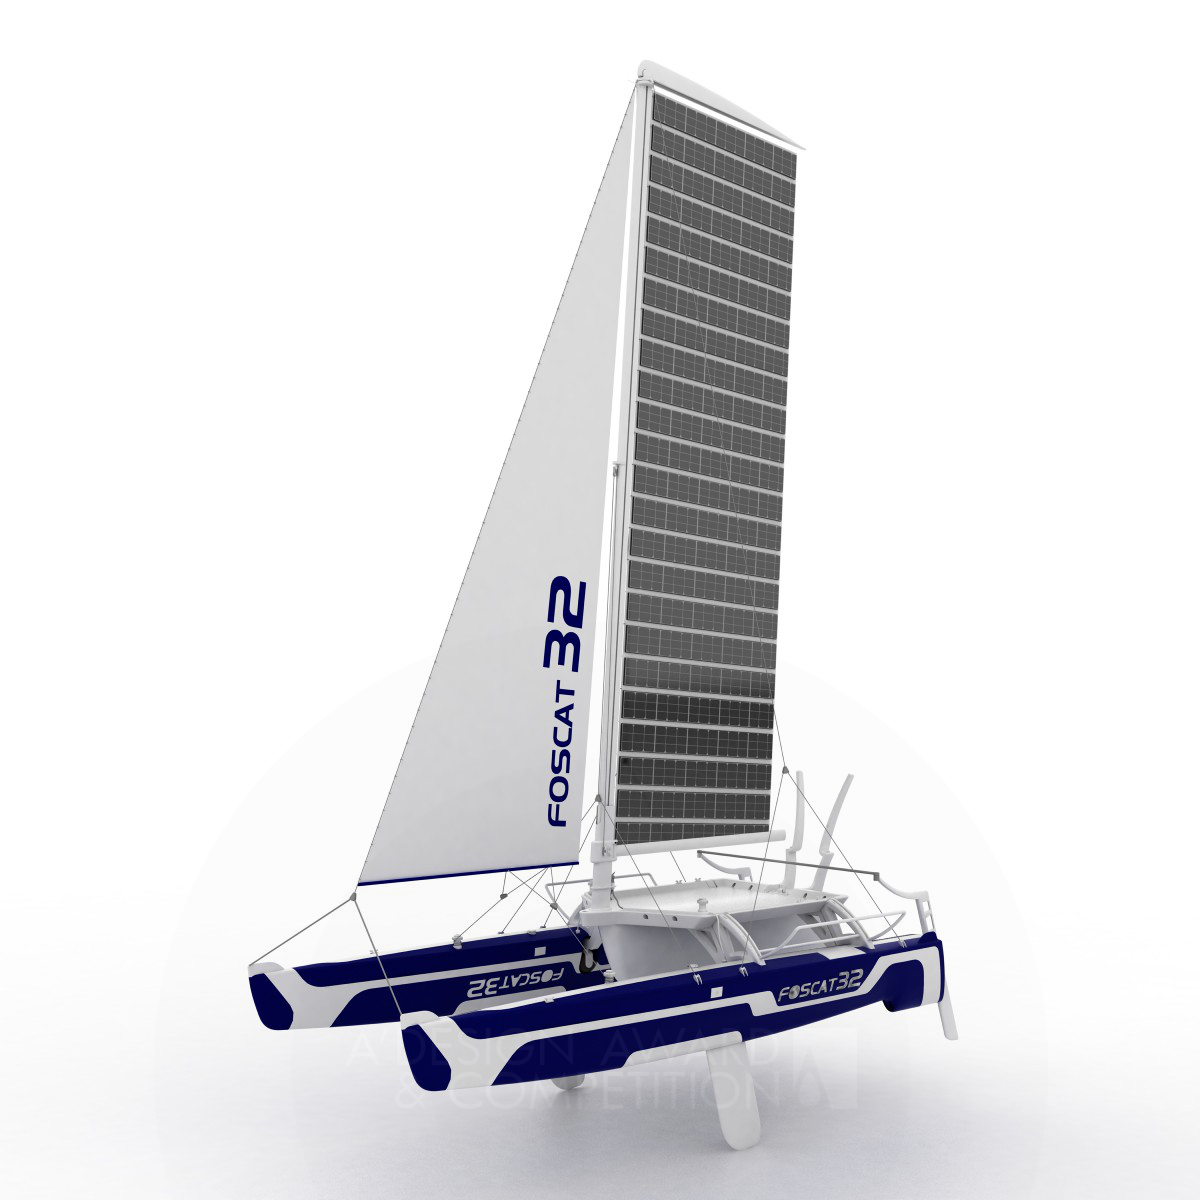 Foscat-32 <b>Folding Solar Catamaran